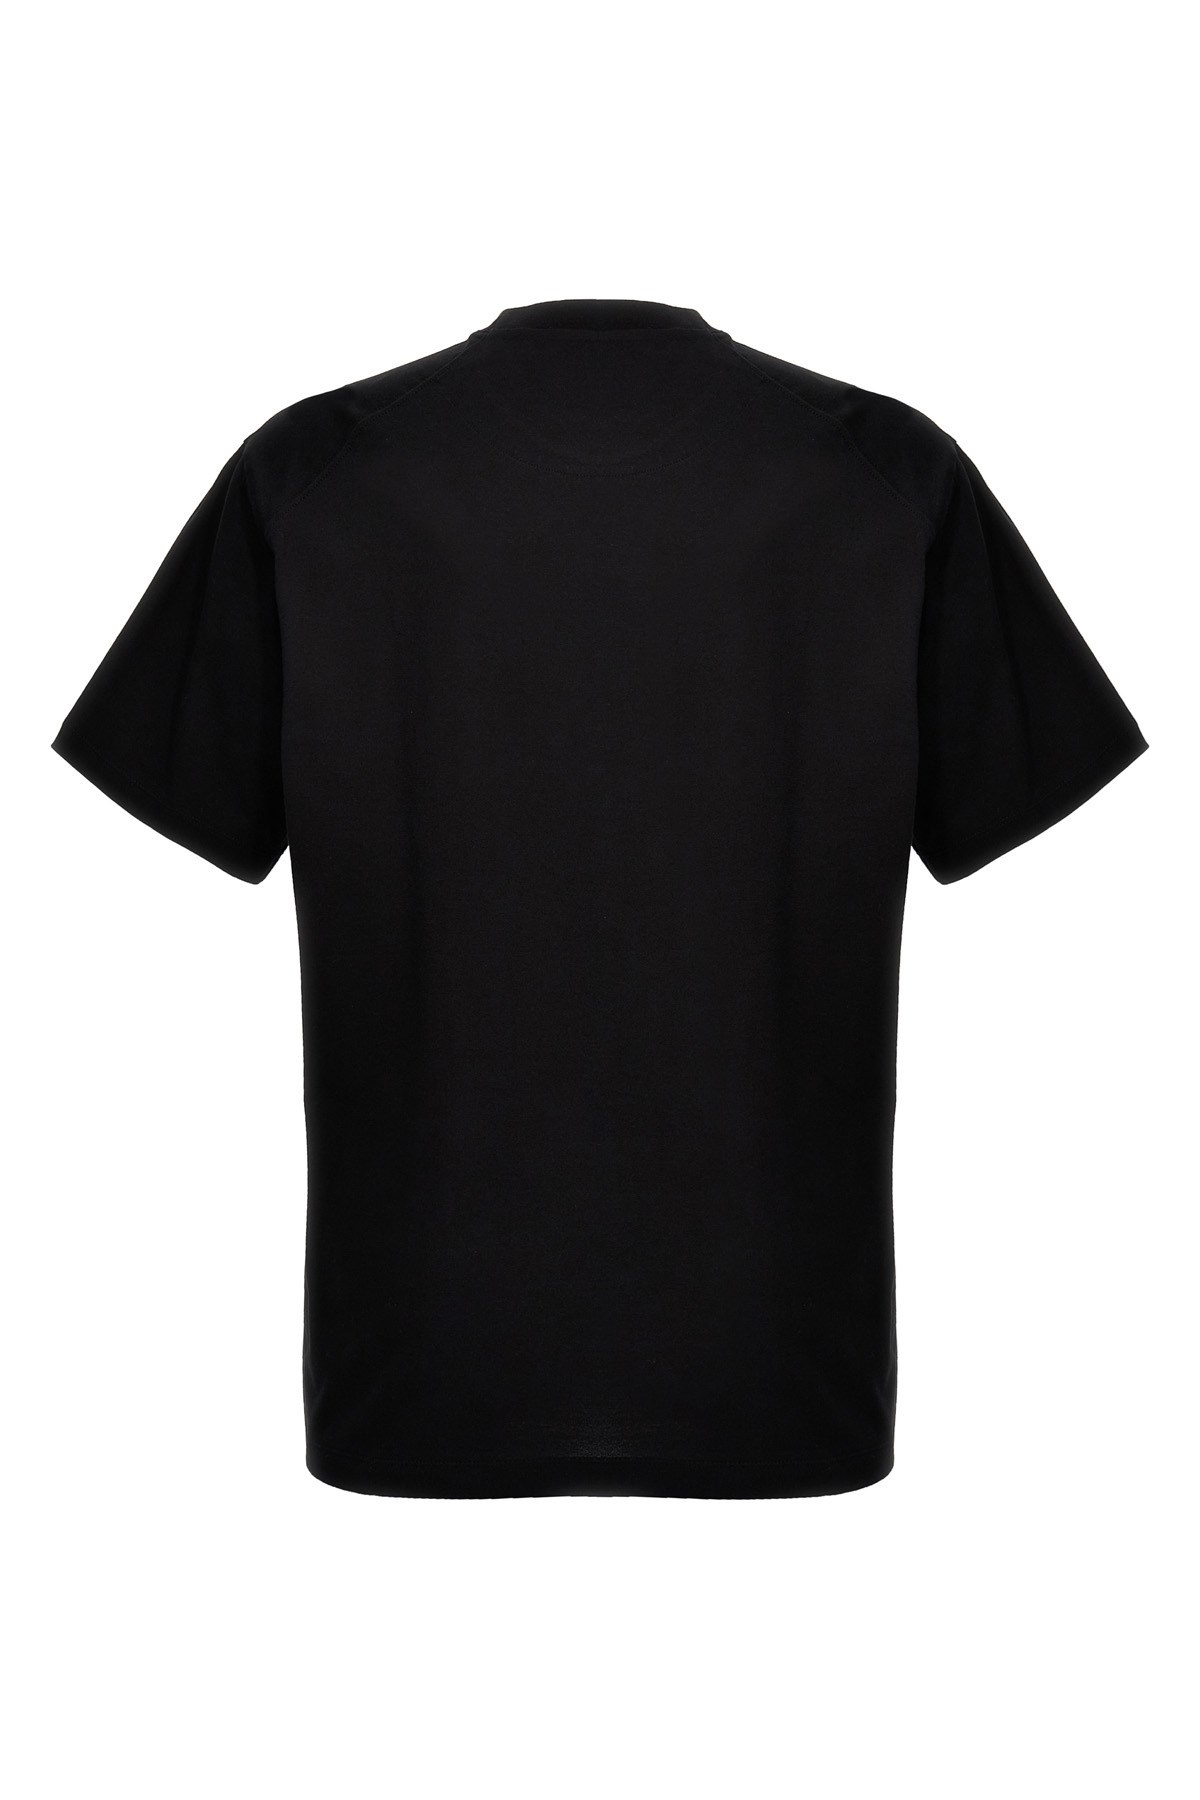 'Gfx' T-shirt - 3